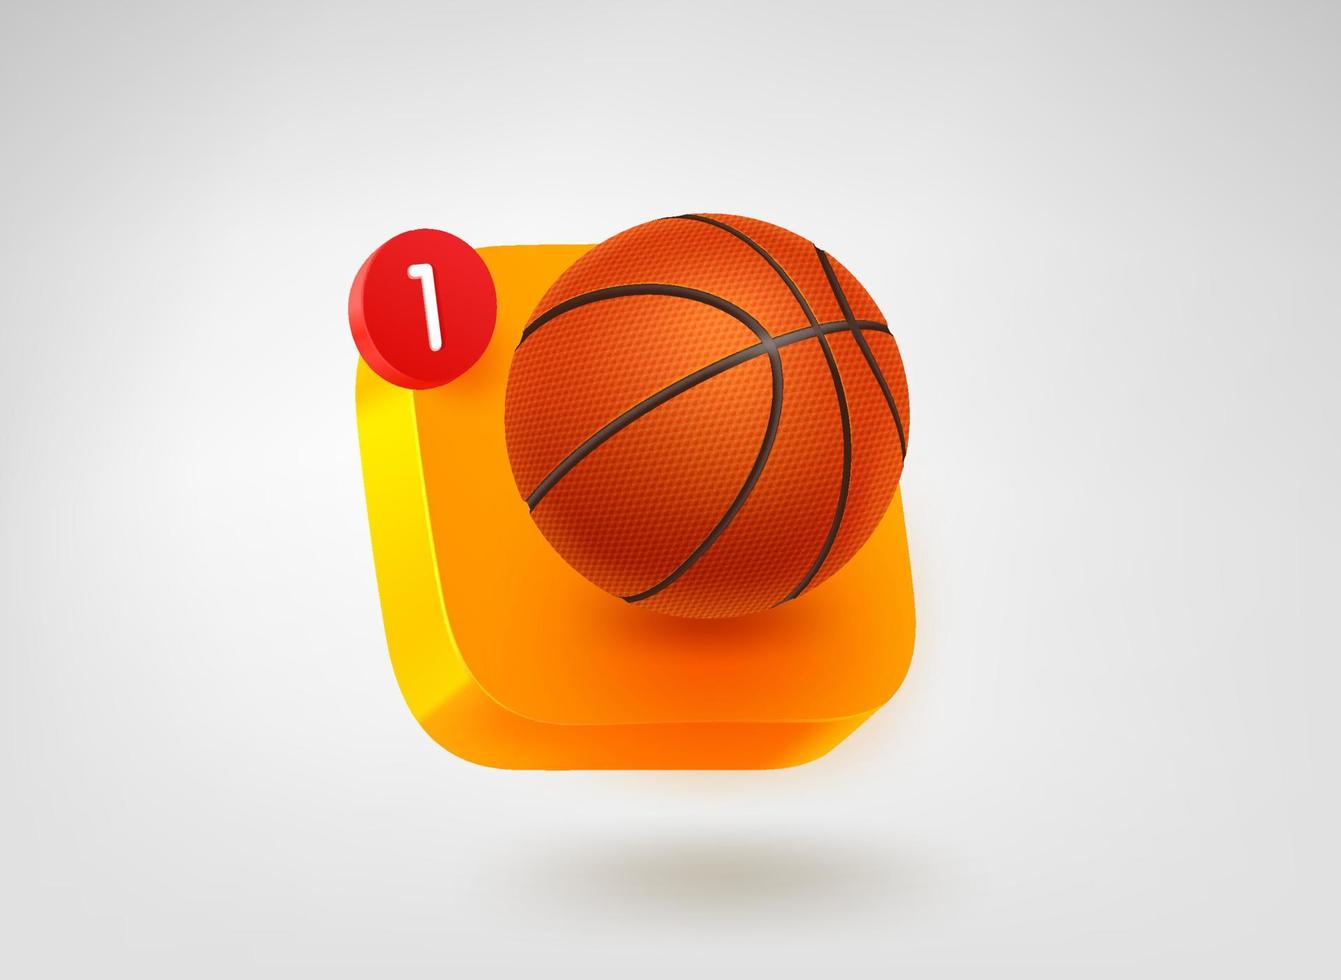 Basketball app button. 3d vector mobile application icon